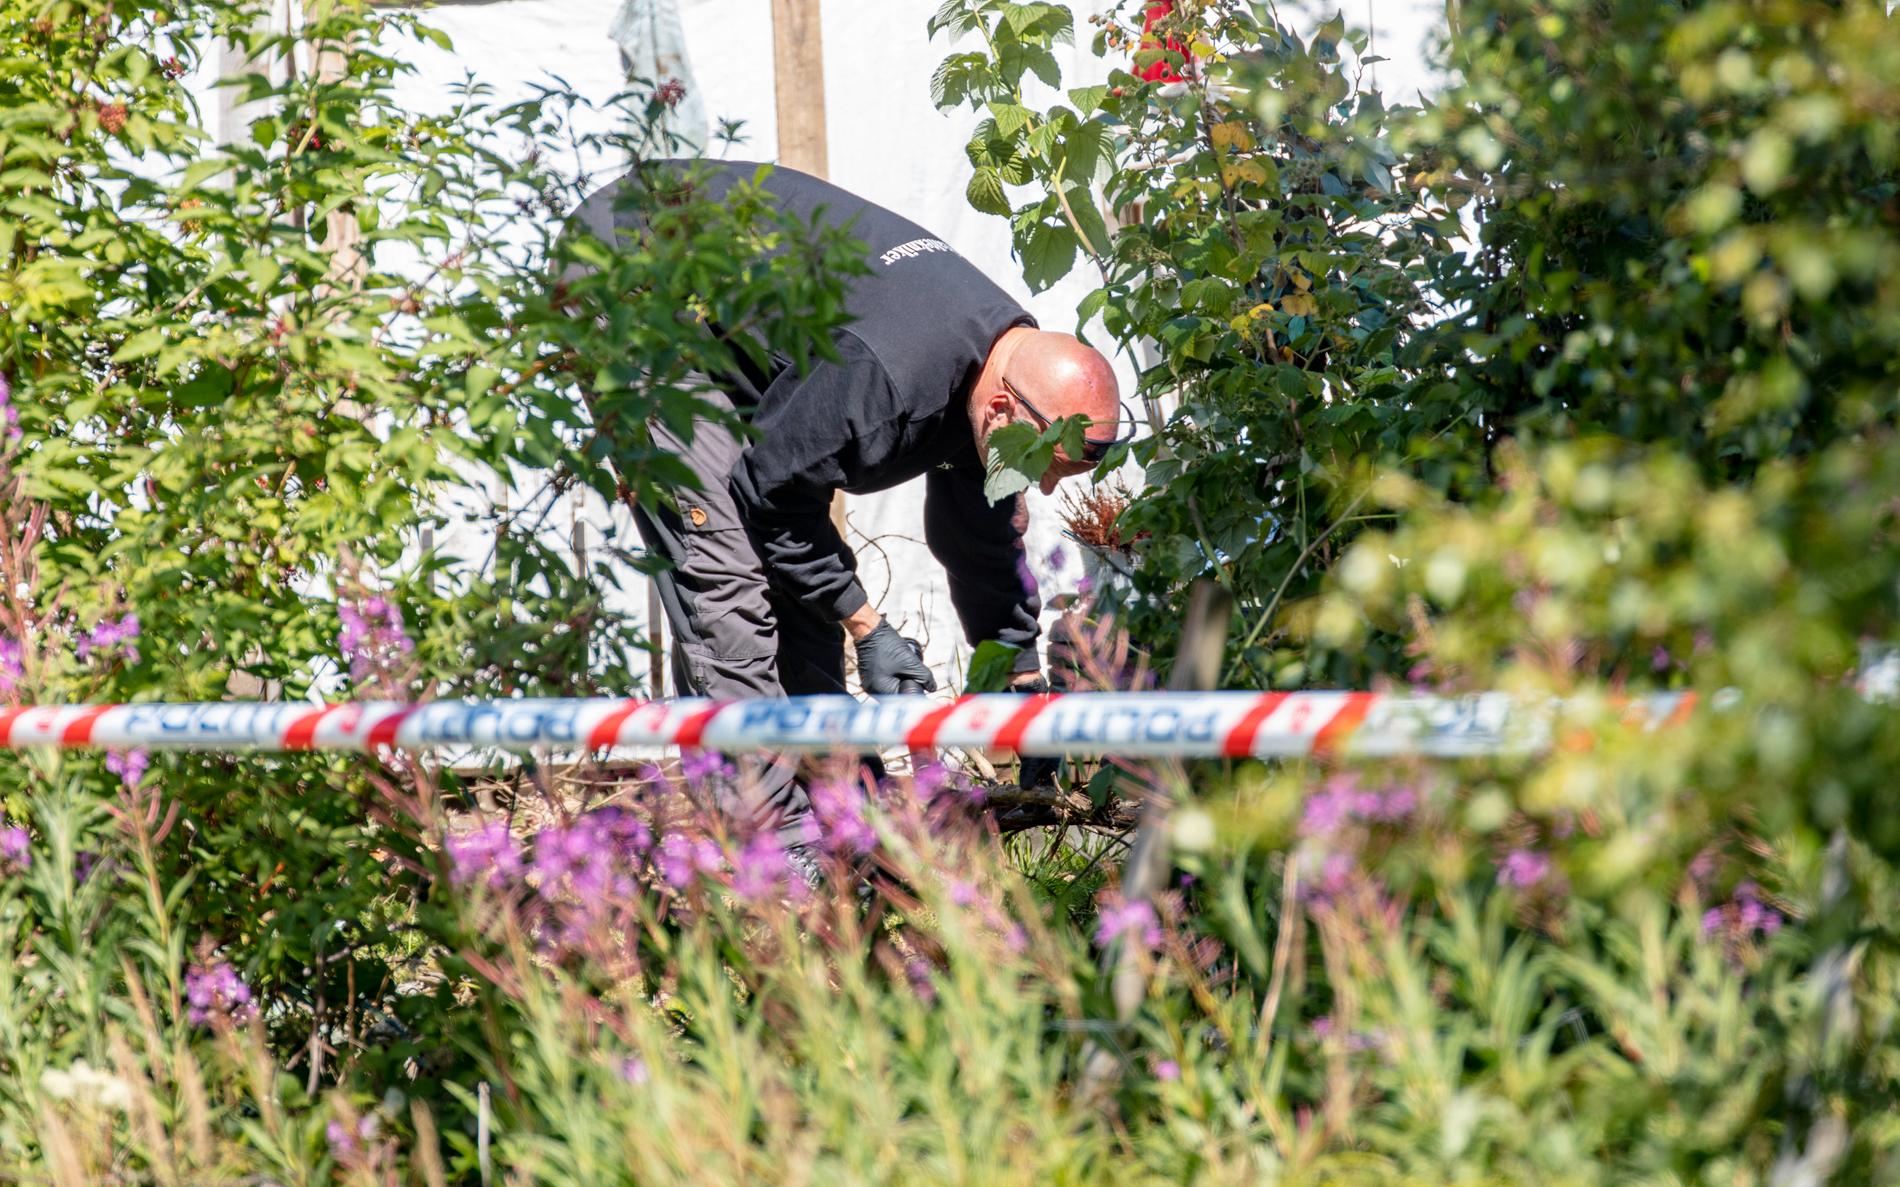 Christian Halvorsen ble funnet død søndag kveld utenfor en bolig i Askim. 